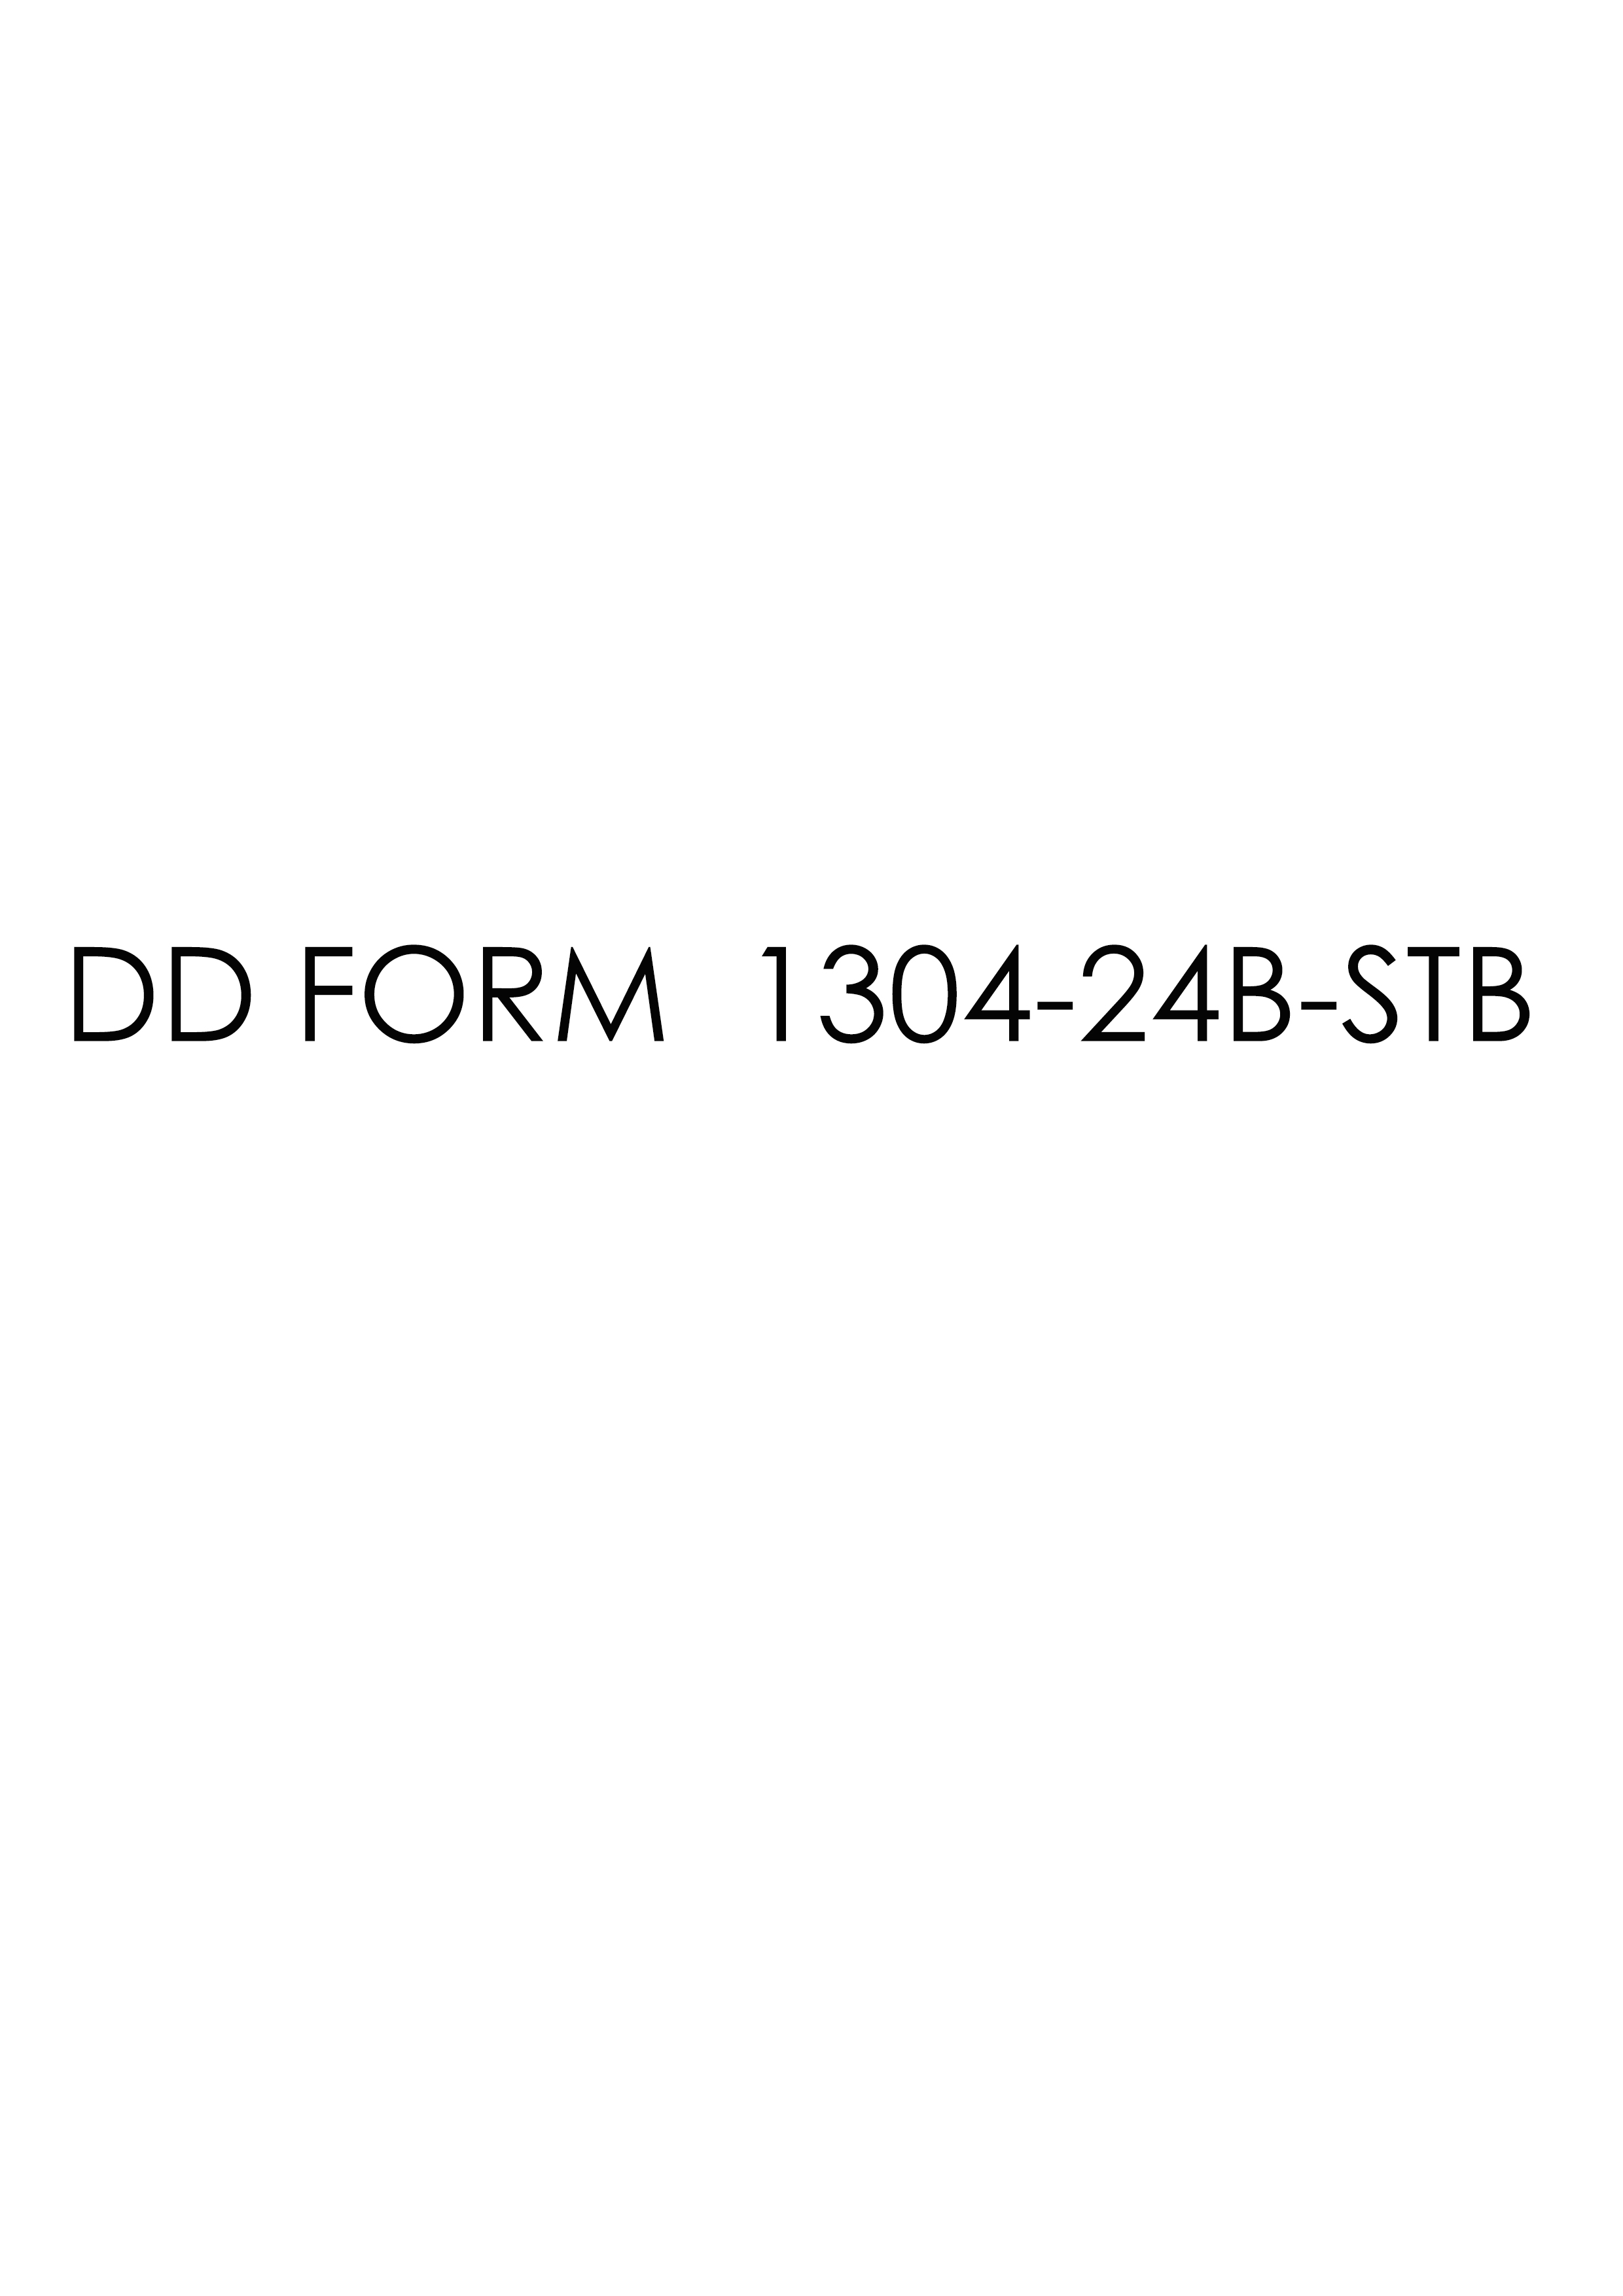 dd Form 1304-24B-STB fillable